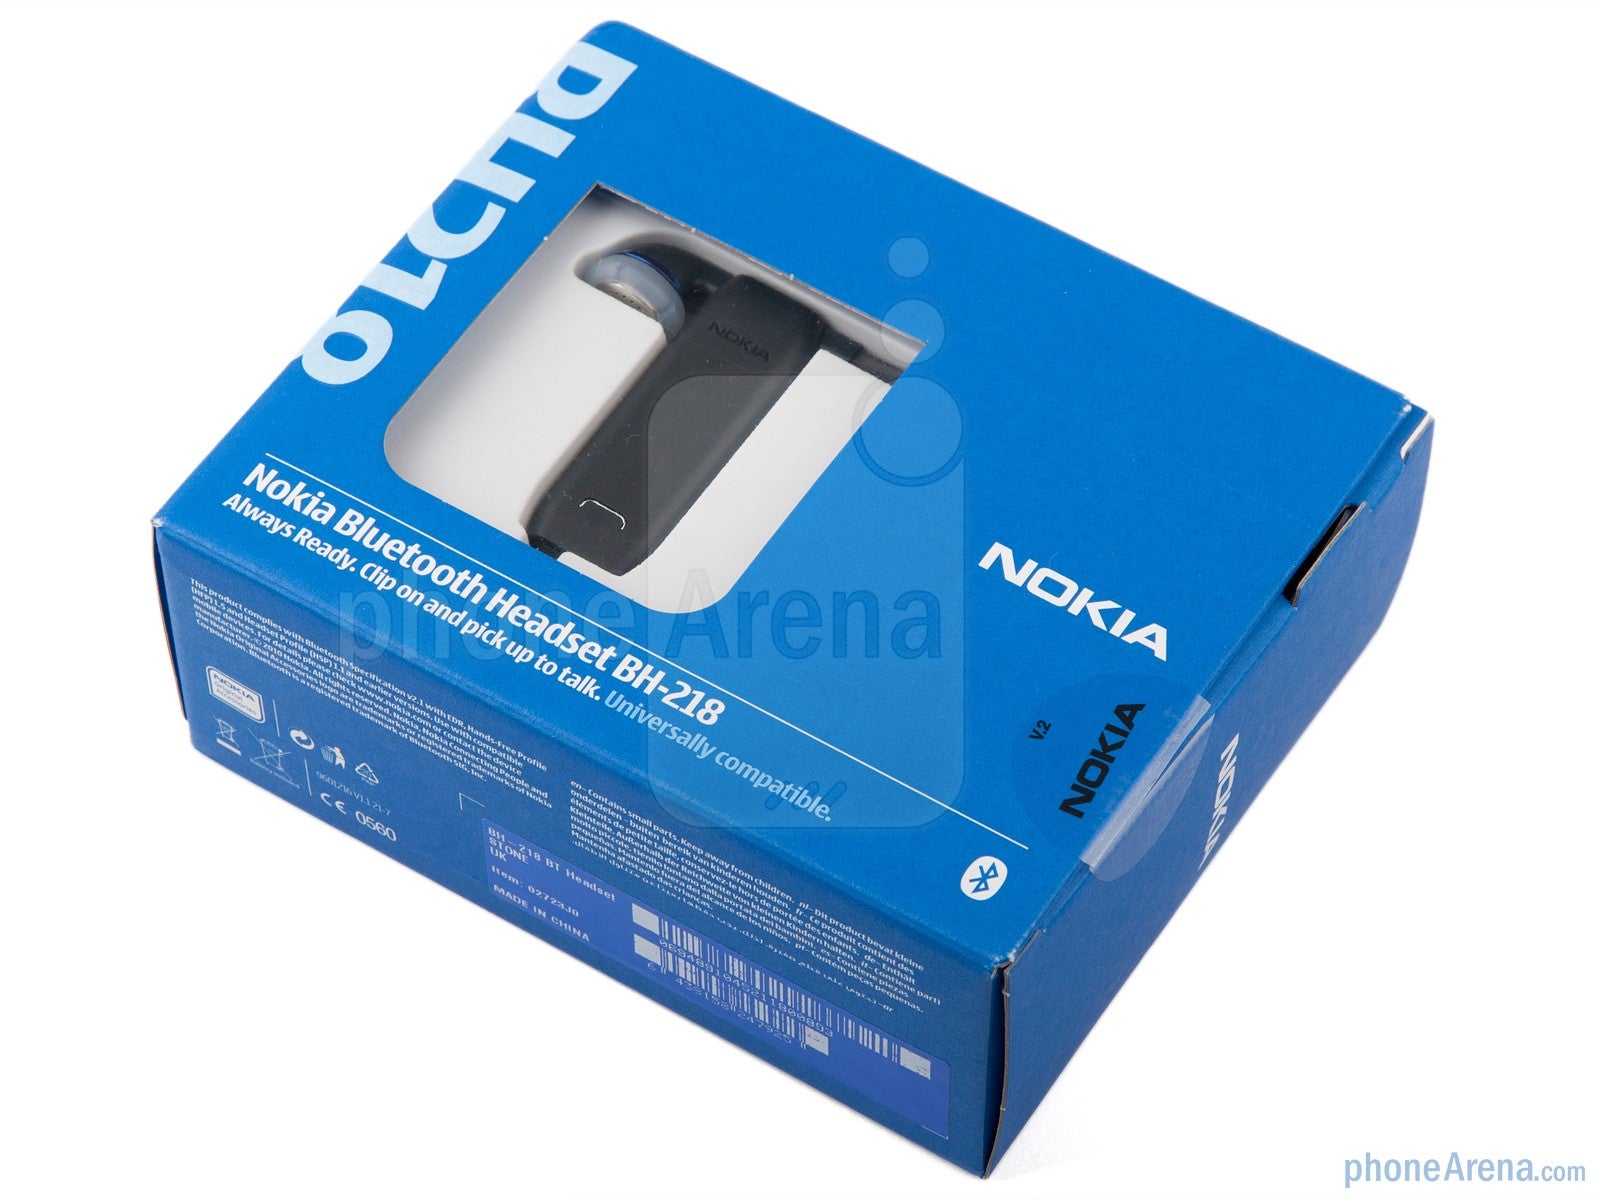 Nokia BH-218 Review